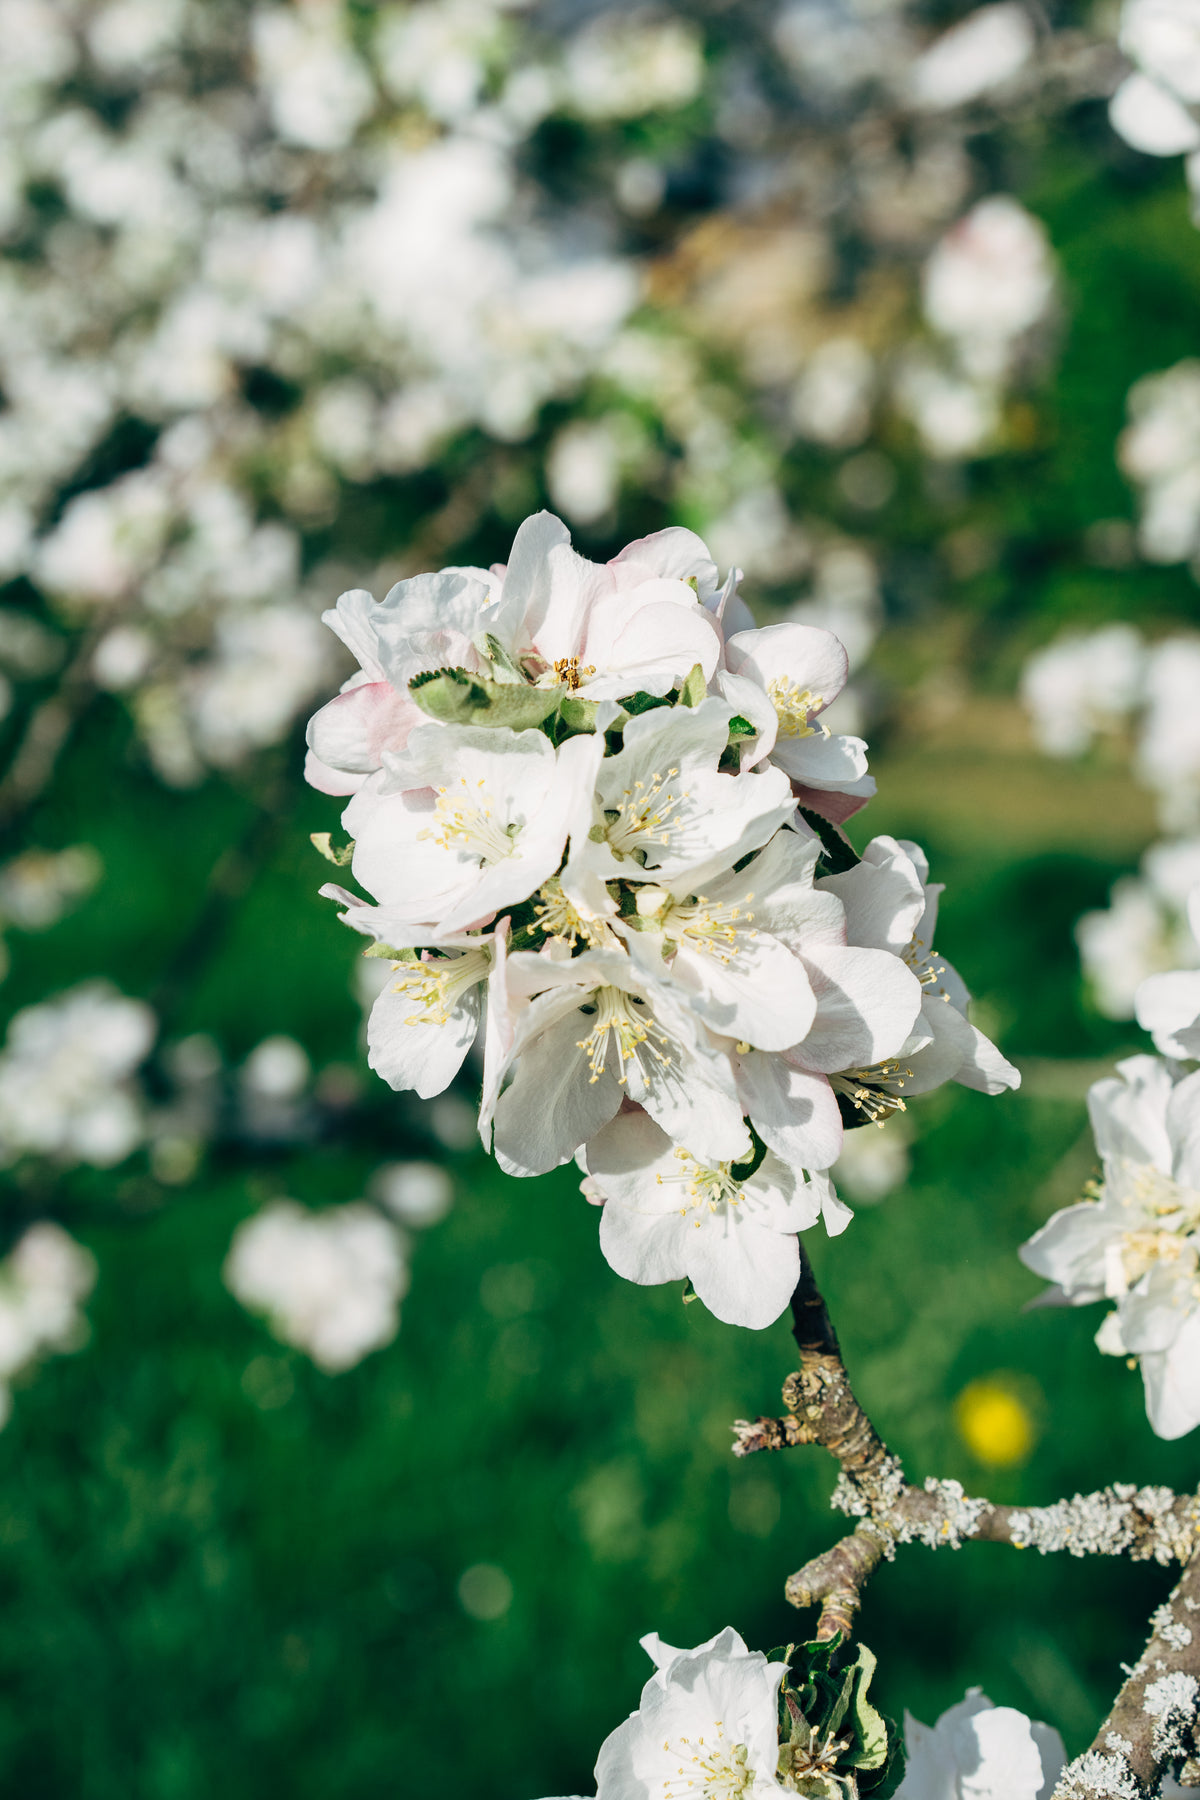 apple blossom flower in focus